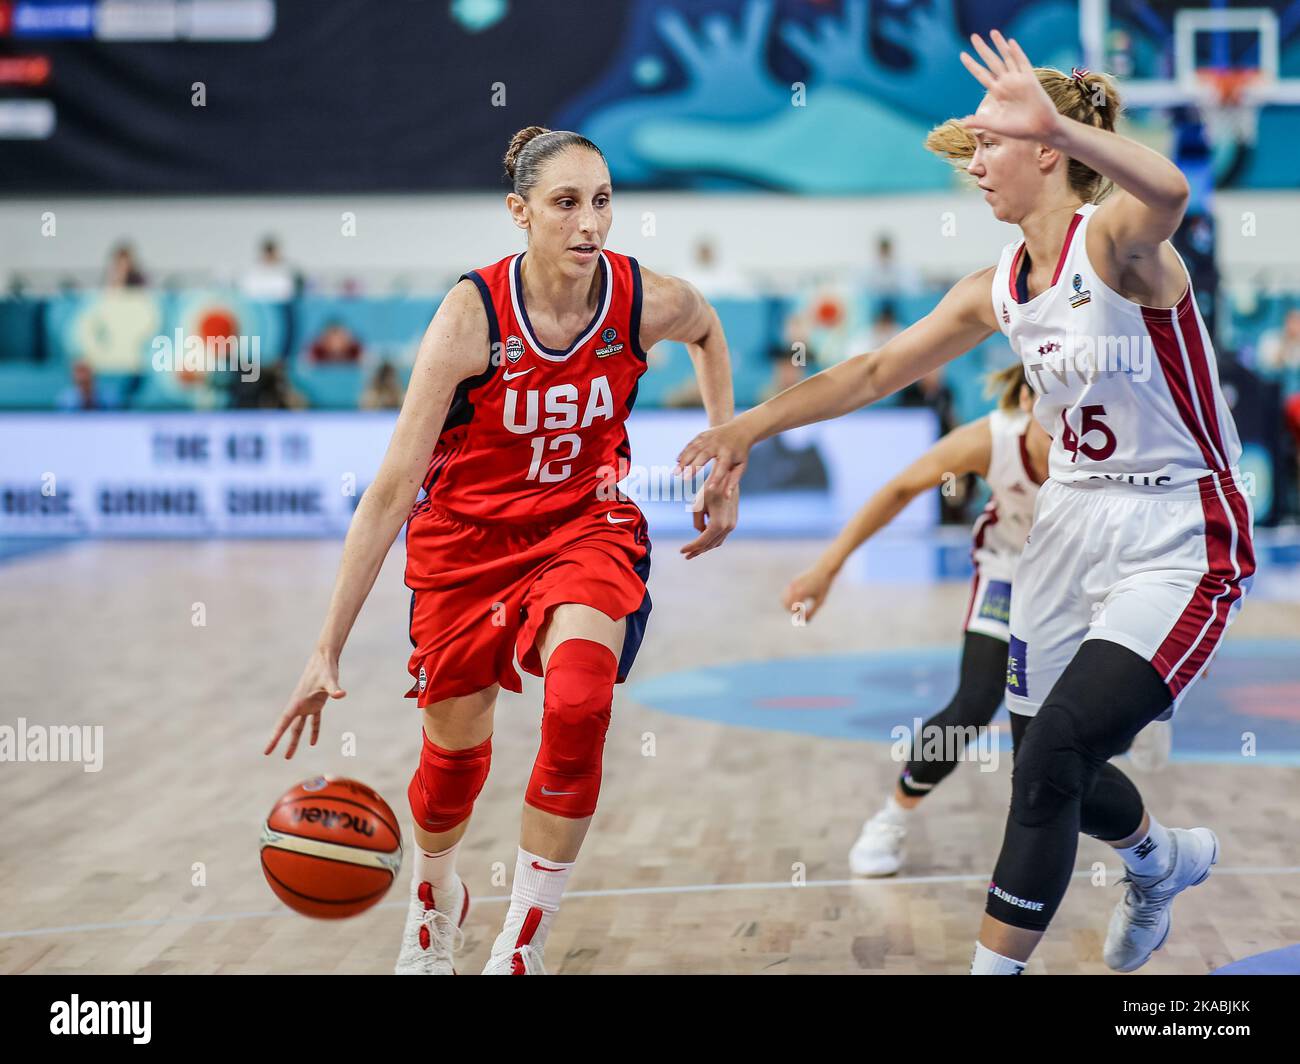 Espagne, Ténérife, 25 septembre 2018: La joueuse américaine de basket-ball Diana Taurasi en action pendant la coupe du monde de basket-ball féminin de la FIBA Banque D'Images